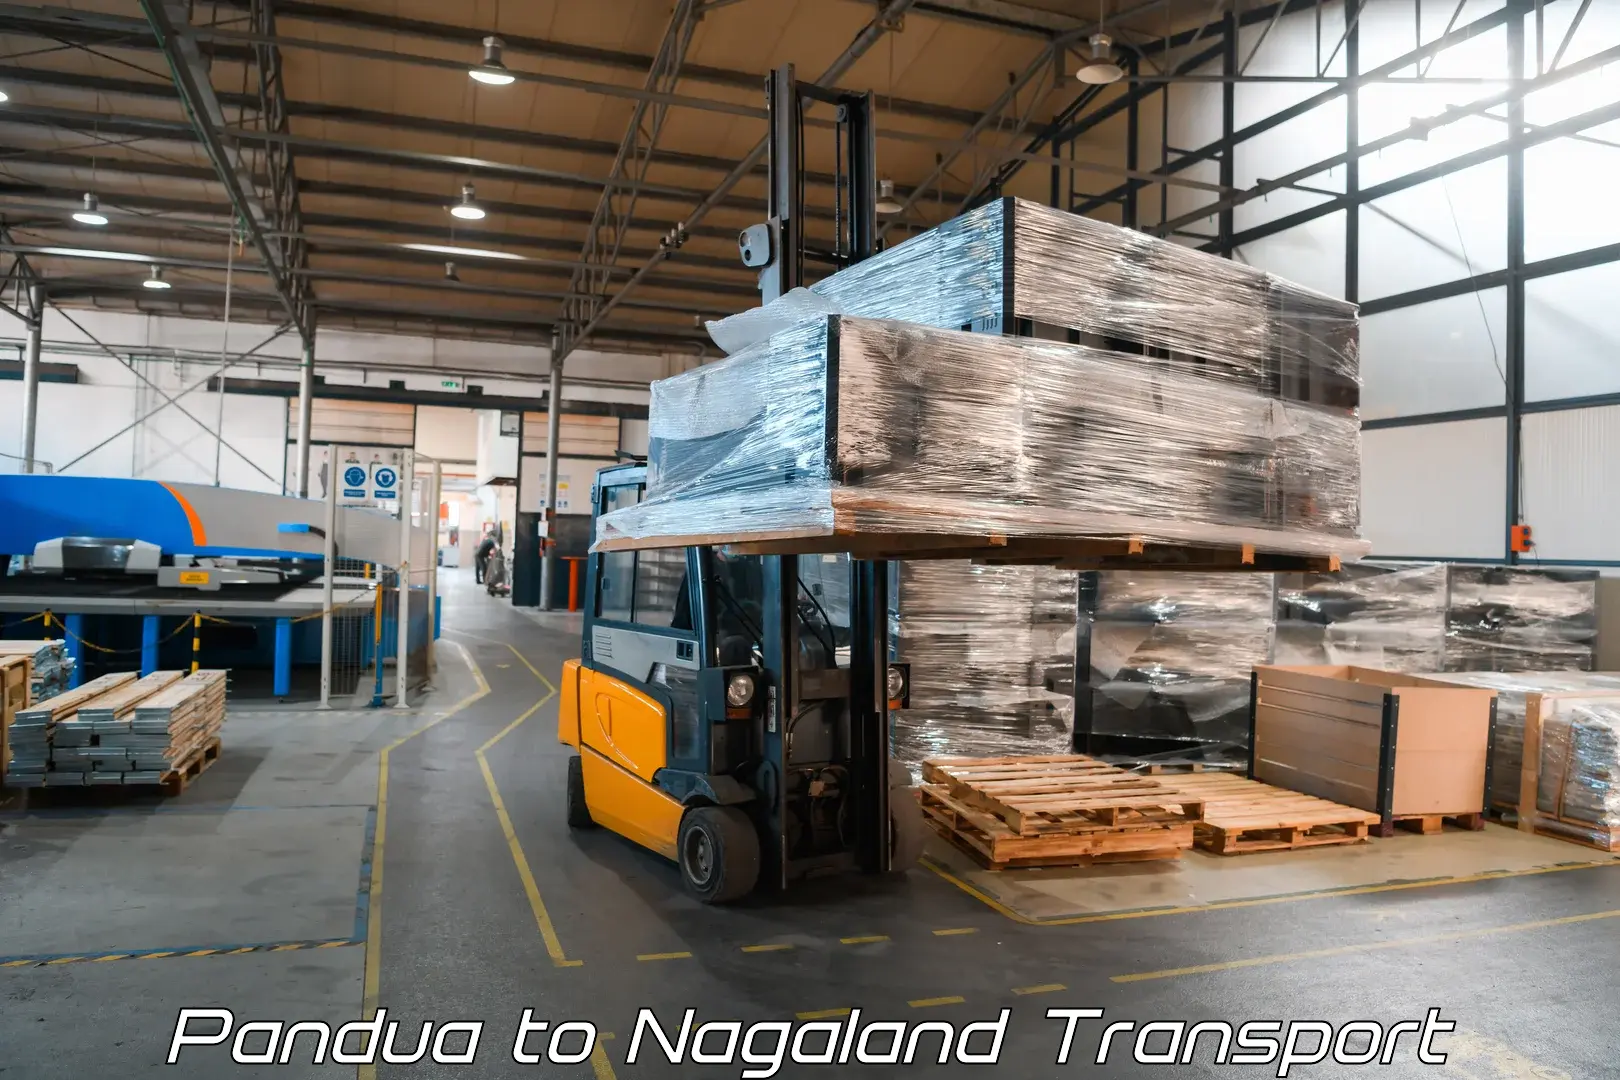 Air cargo transport services Pandua to NIT Nagaland